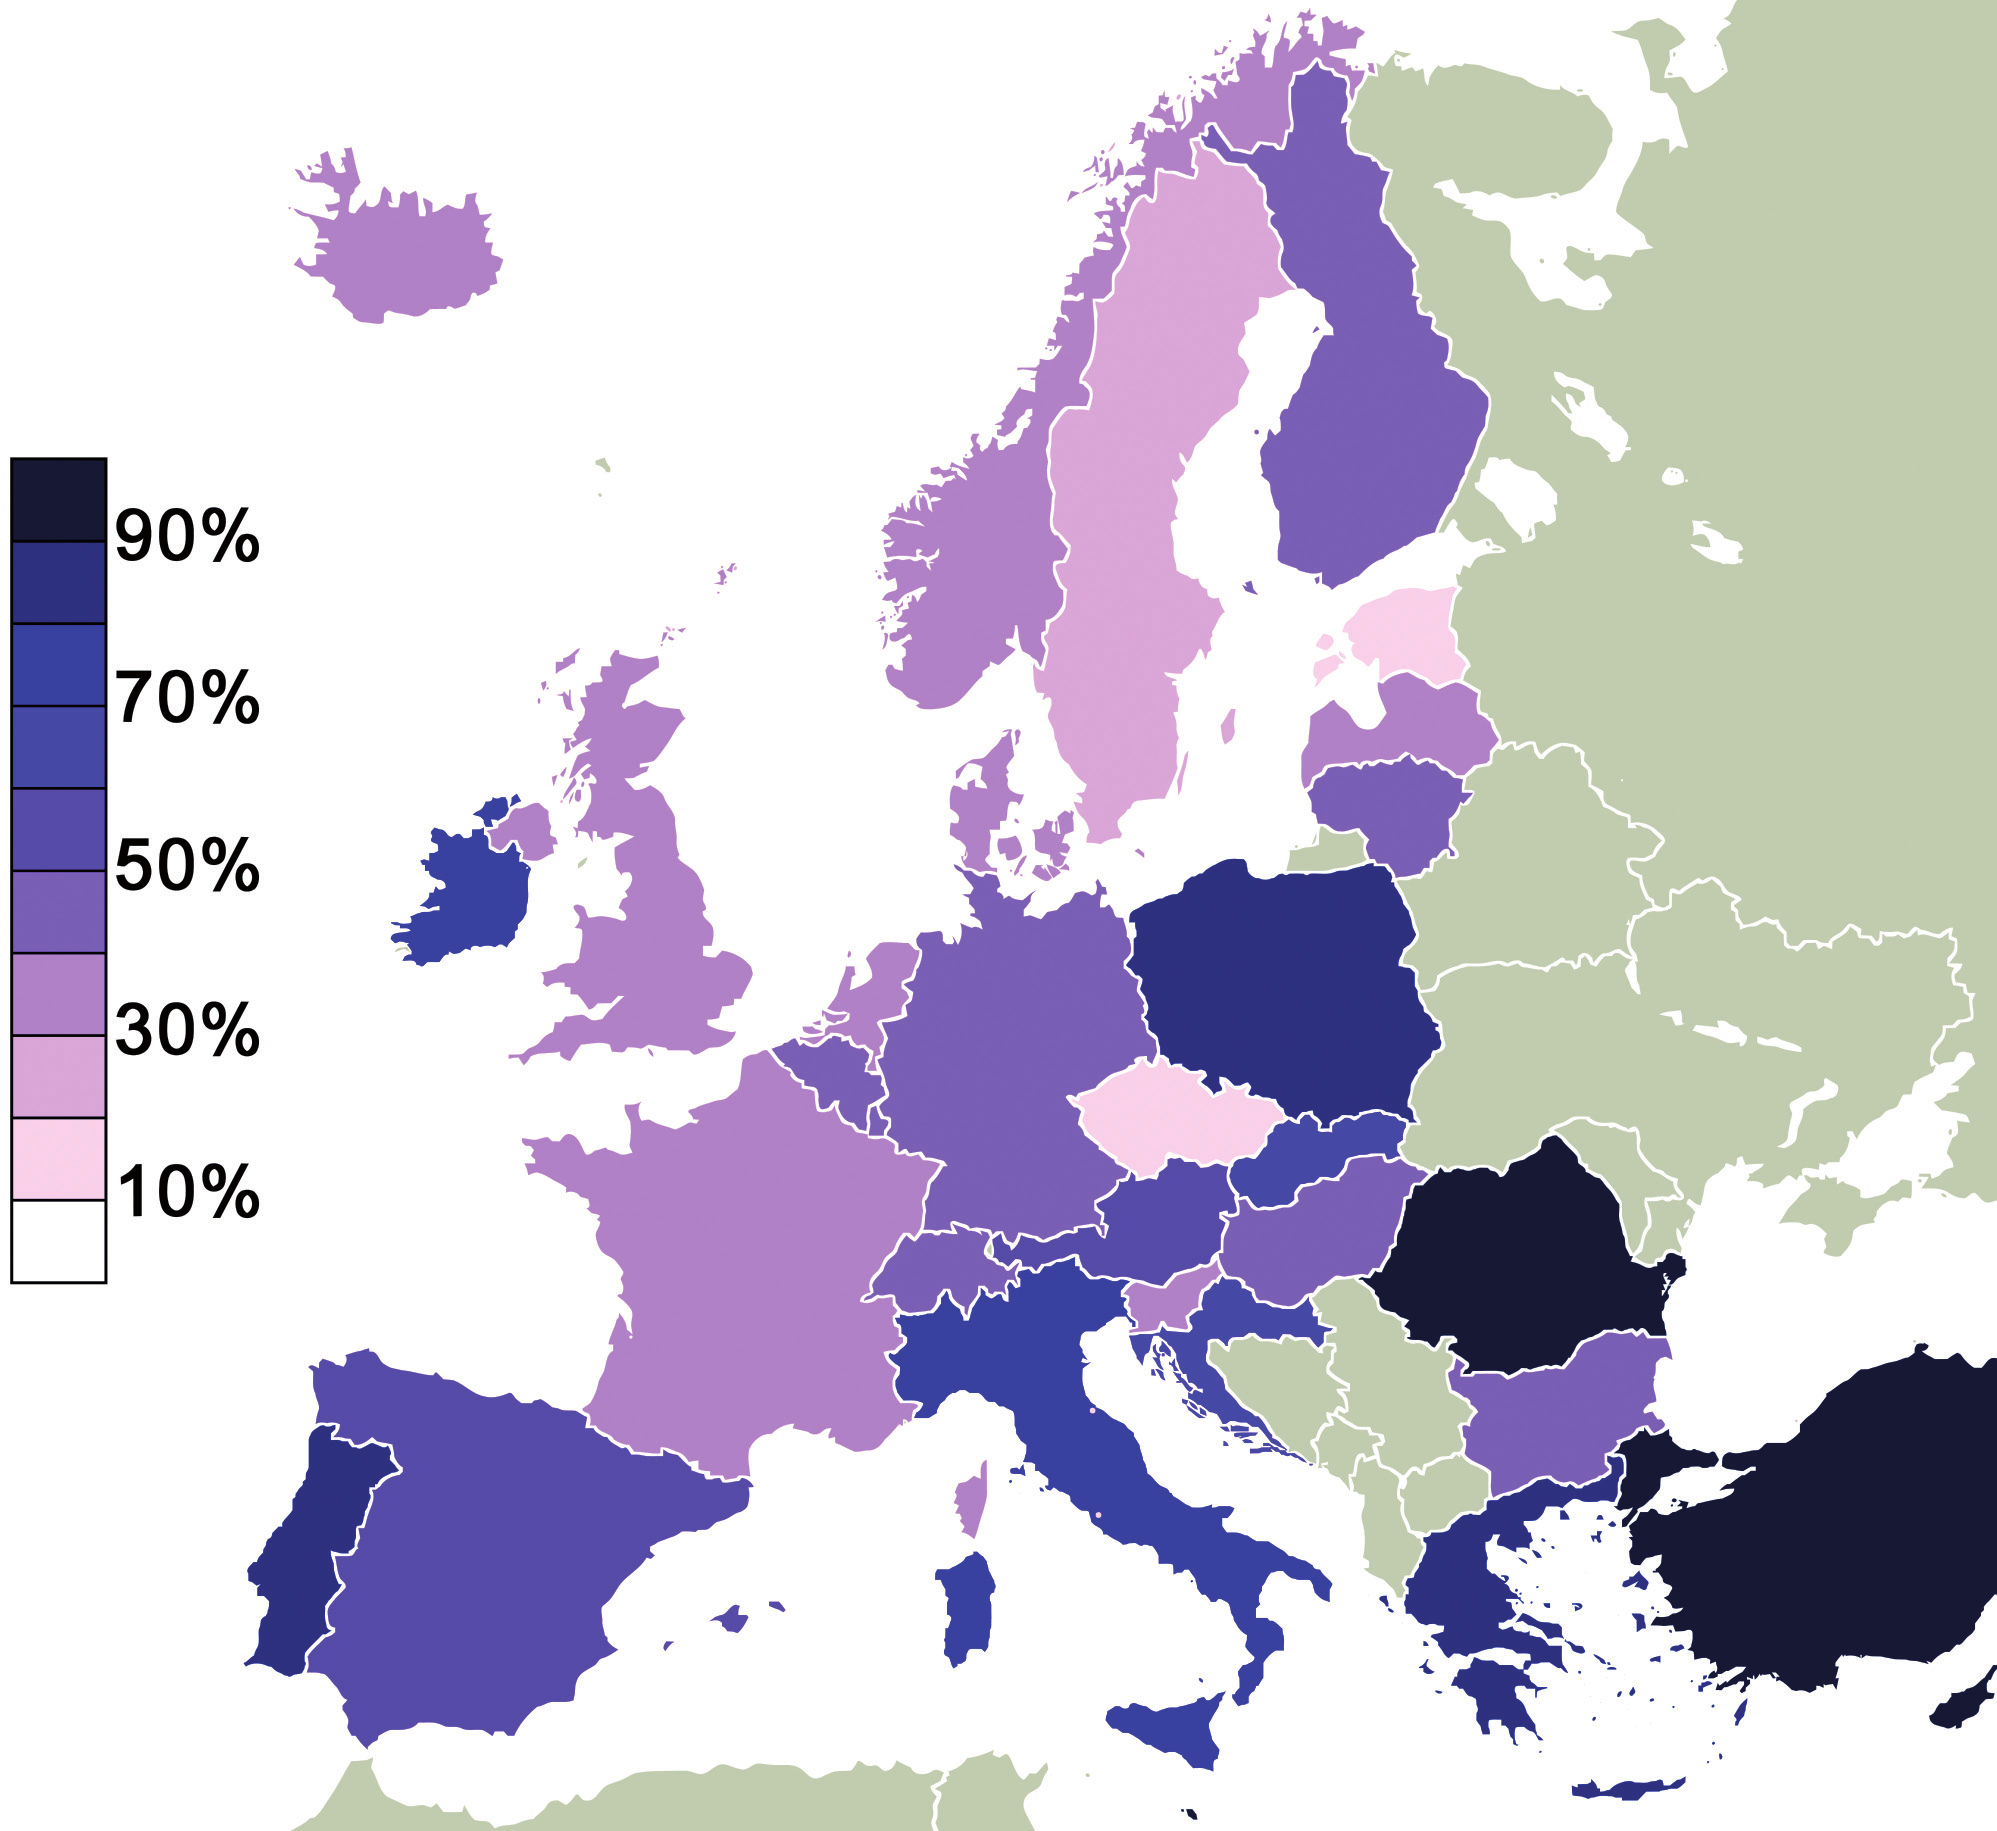 Obr. 3 Evropské země podle zastoupení obyvatel věřících v